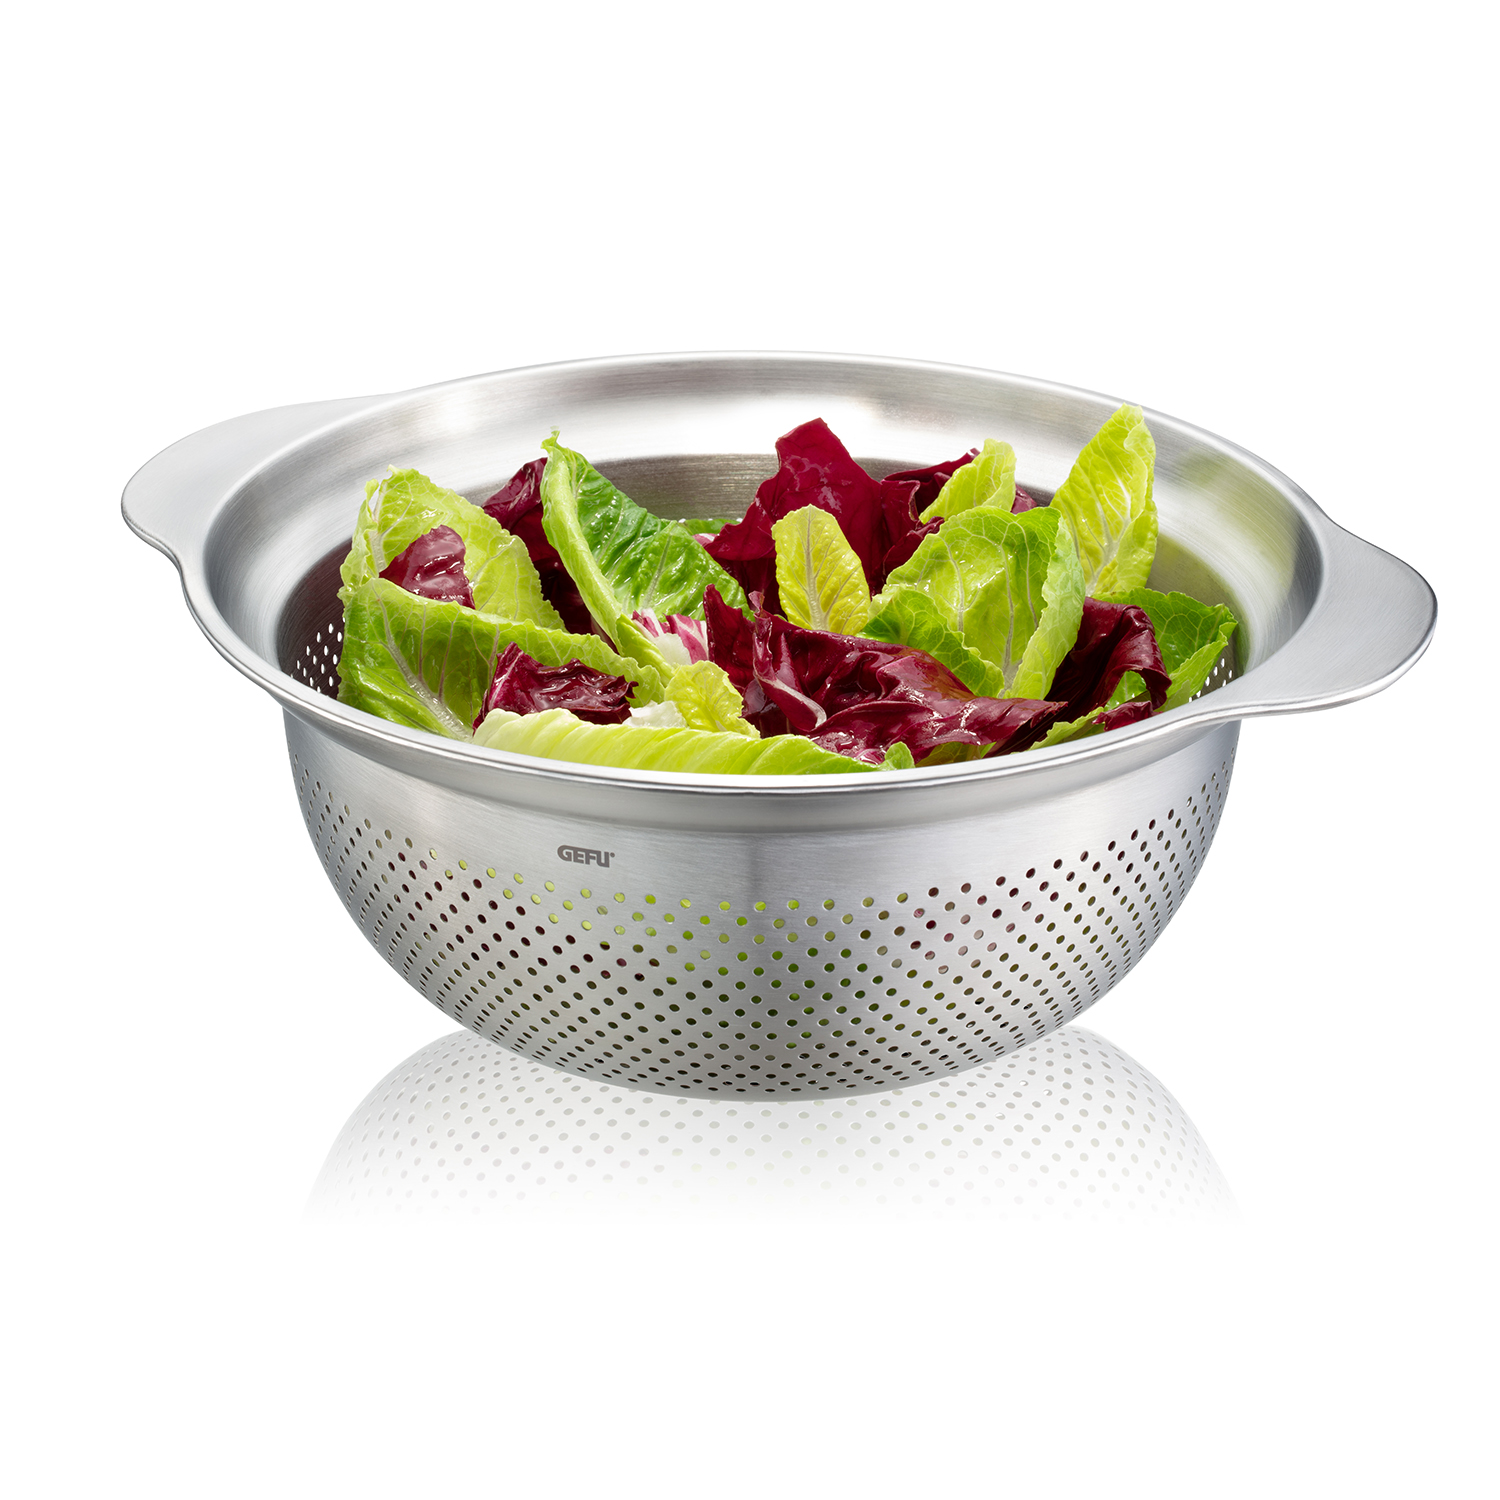 GEFU Abtropfsieb Sieb Seiher Cm 27 Salat Salatsieb PREMIO Edelstahl bekannt Küchen nicht Küchensieb